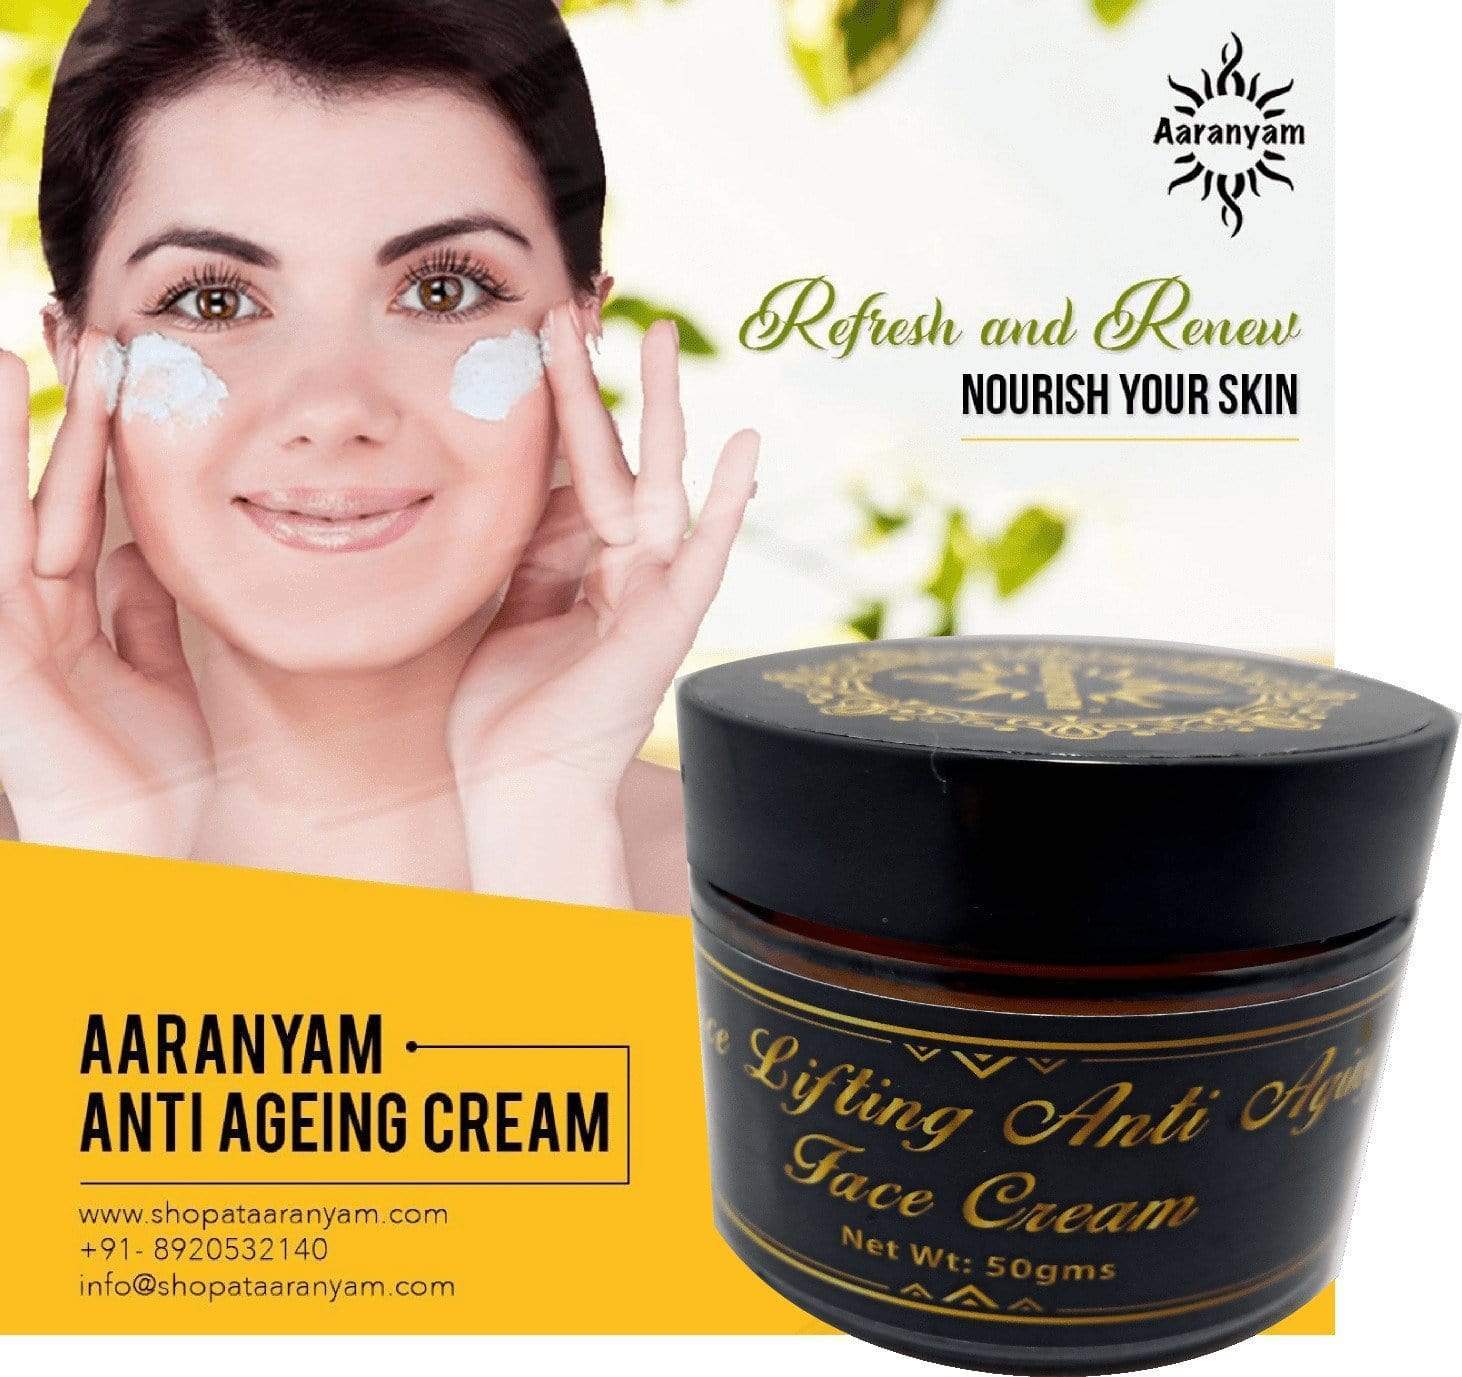 Face Lifting  Anti Aging Face Cream - aaranyam.com